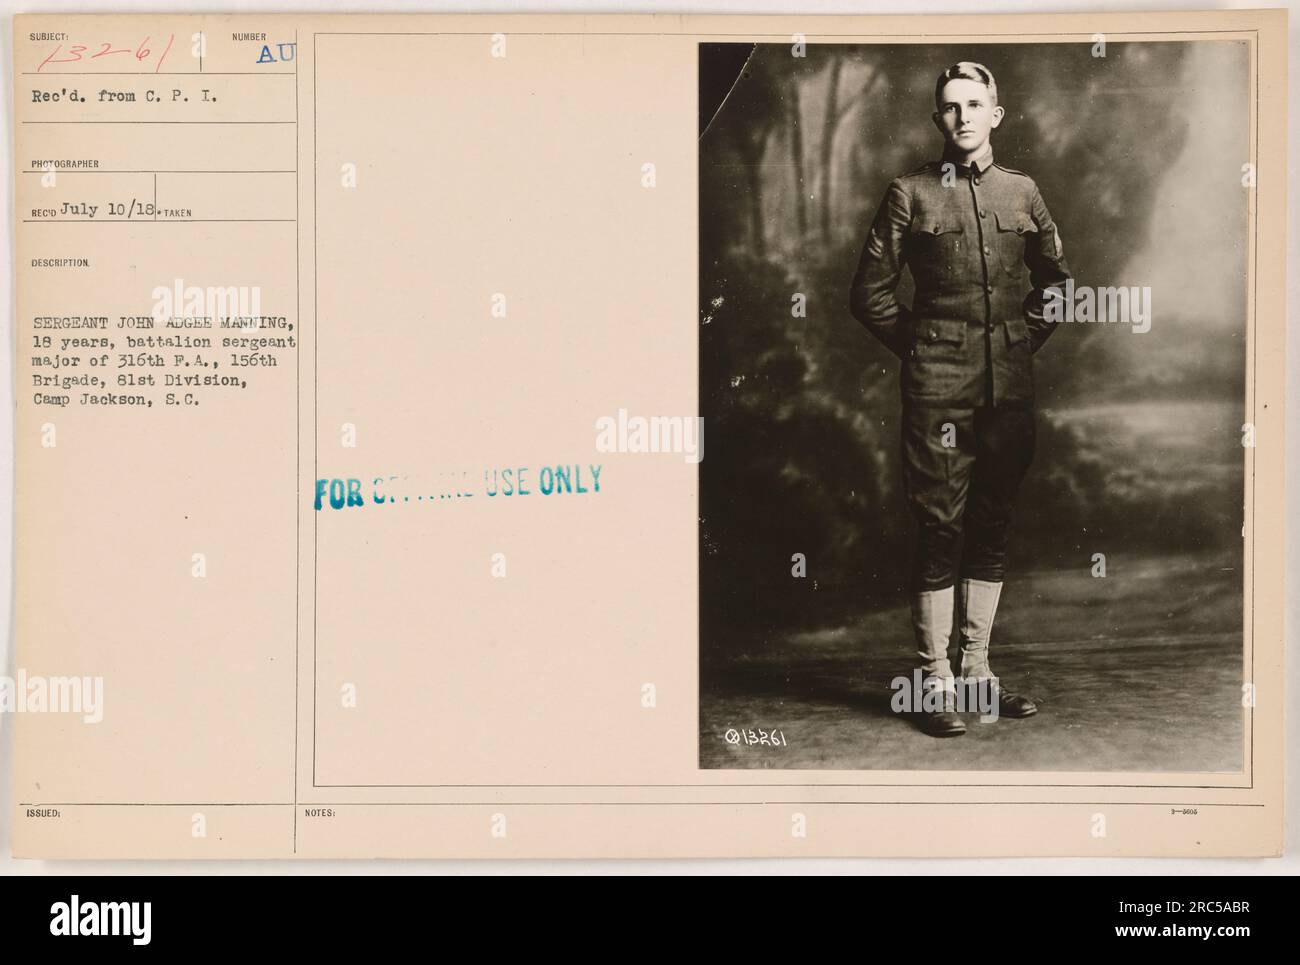 Il sergente John Adgee Manning, di 18 anni, viene fotografato nel suo ruolo di sergente di battaglione maggiore della 316th P. A., 156th Brigade, 81st Division, a Camp Jackson, S. C. la foto è stata scattata il 10 luglio 1918 e reca la descrizione ufficiale numero 13261. È stato ricevuto da C. P. I. fotografo per uso esclusivo da parte dei destinatari. Foto Stock